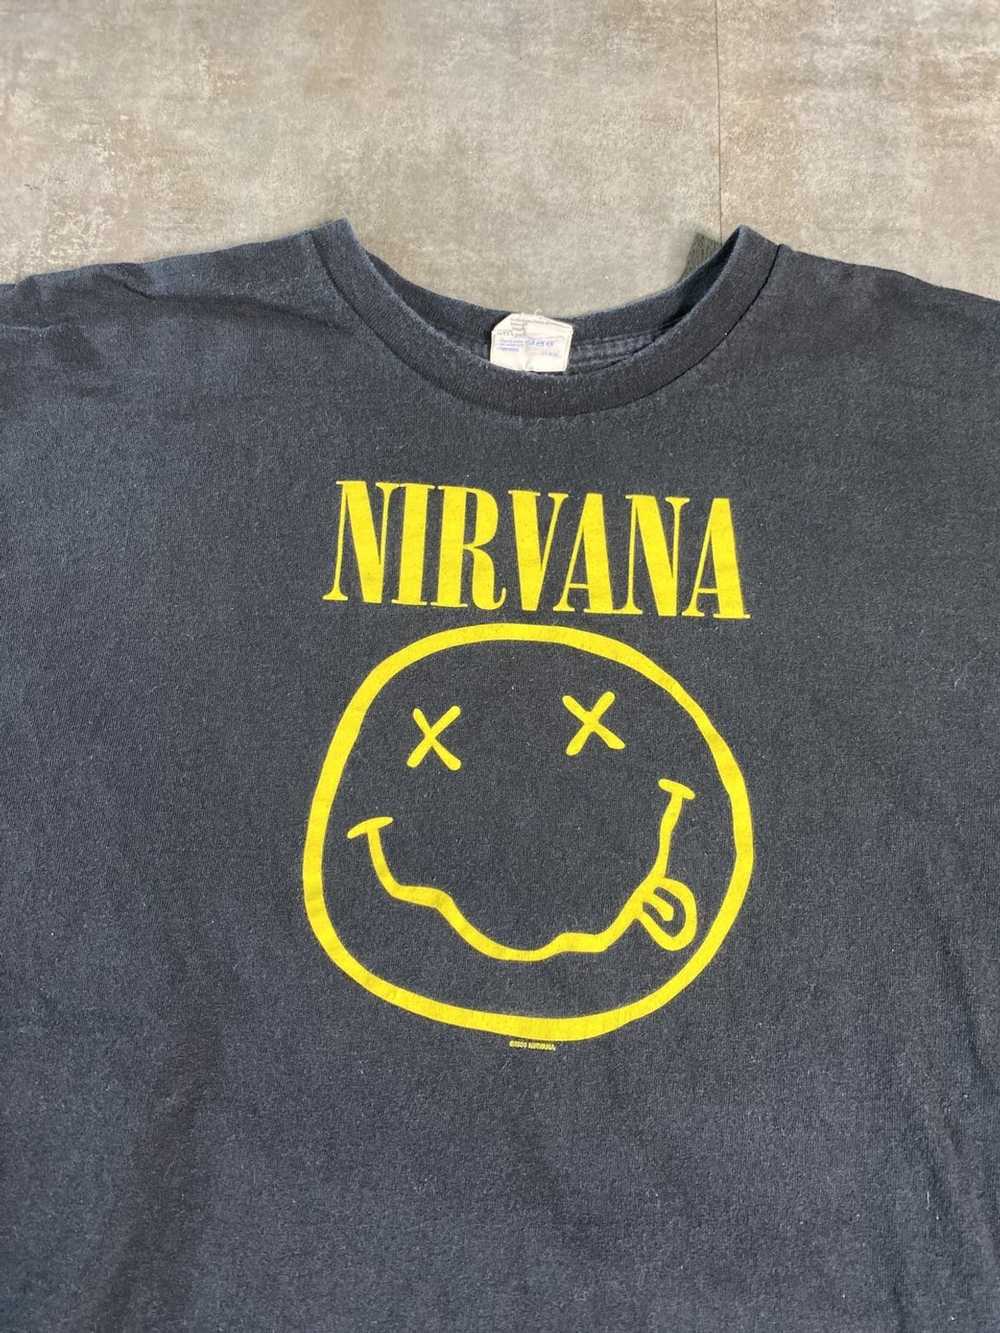 Nirvana × Vintage intage 2003 Nirvana Tee. - image 2